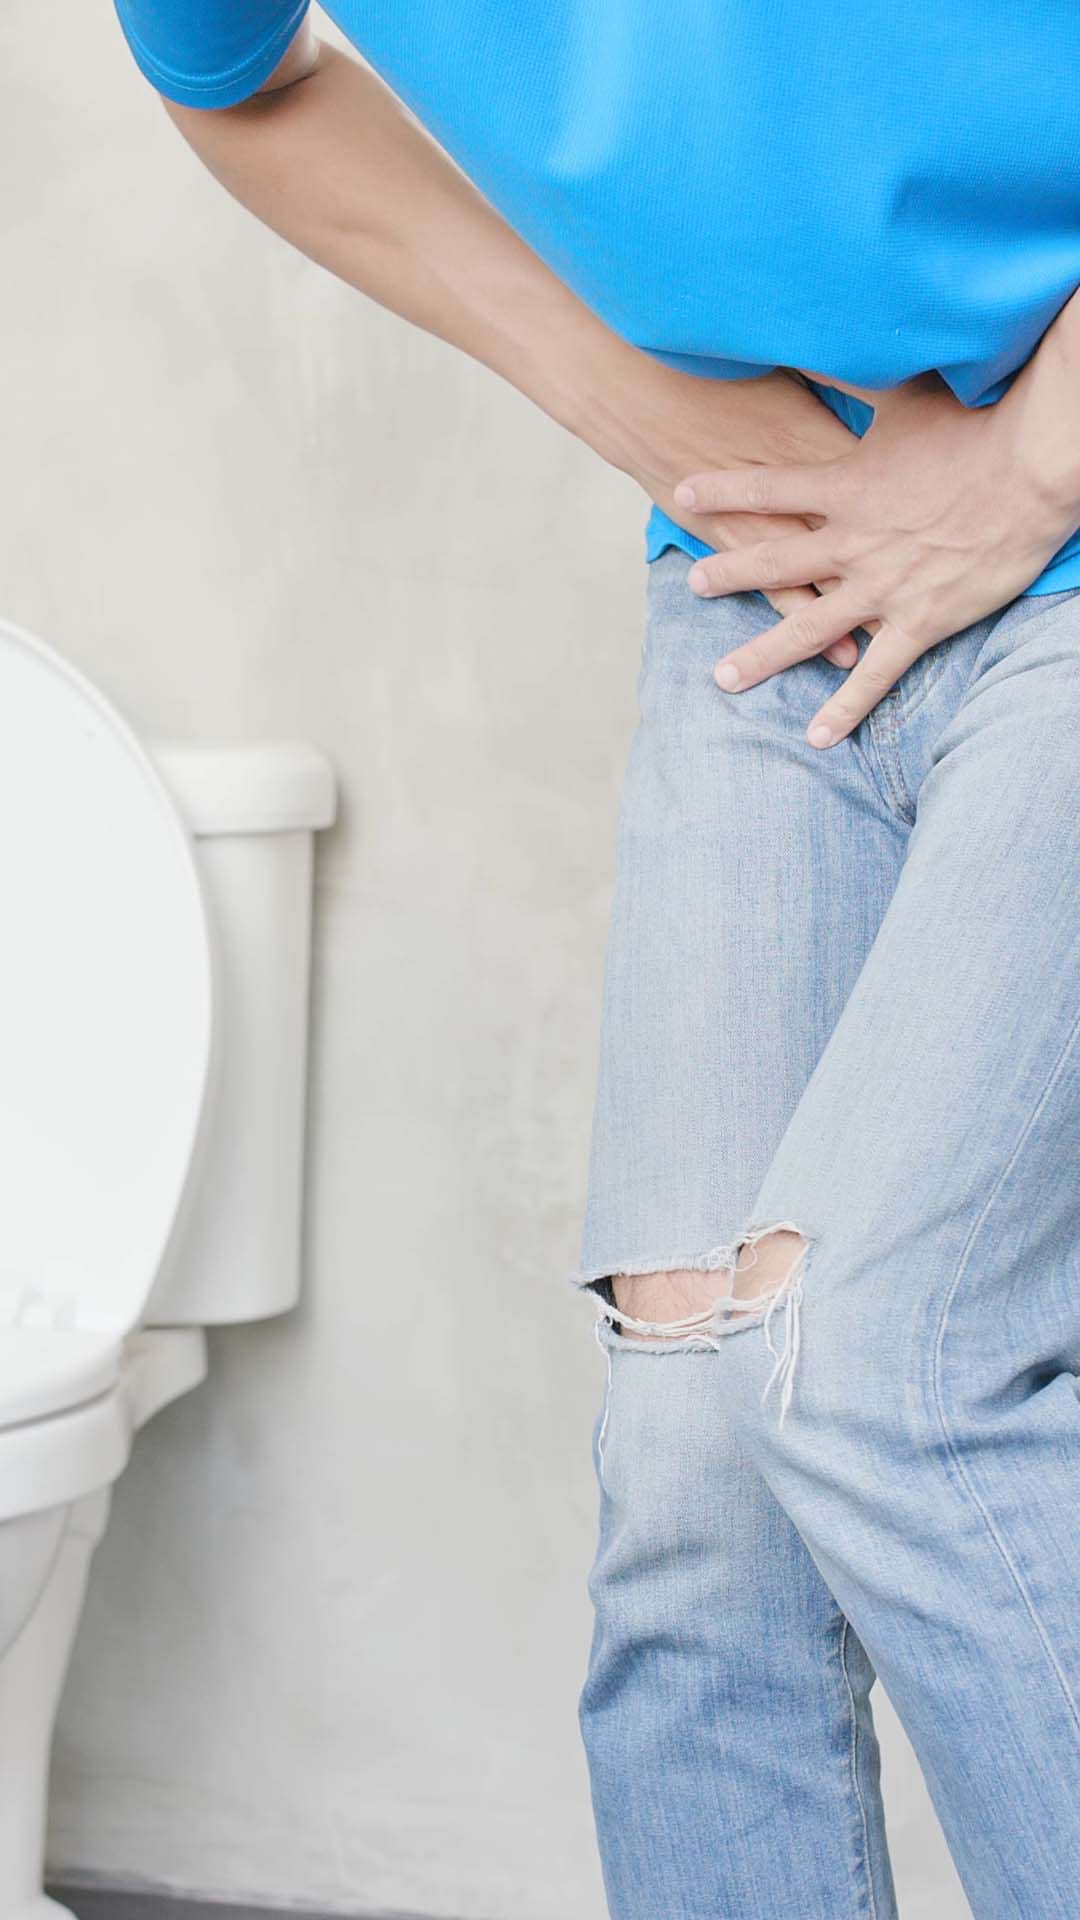 Infectii urinare: Cauze, simptome, tratament si preventie – Good Routine